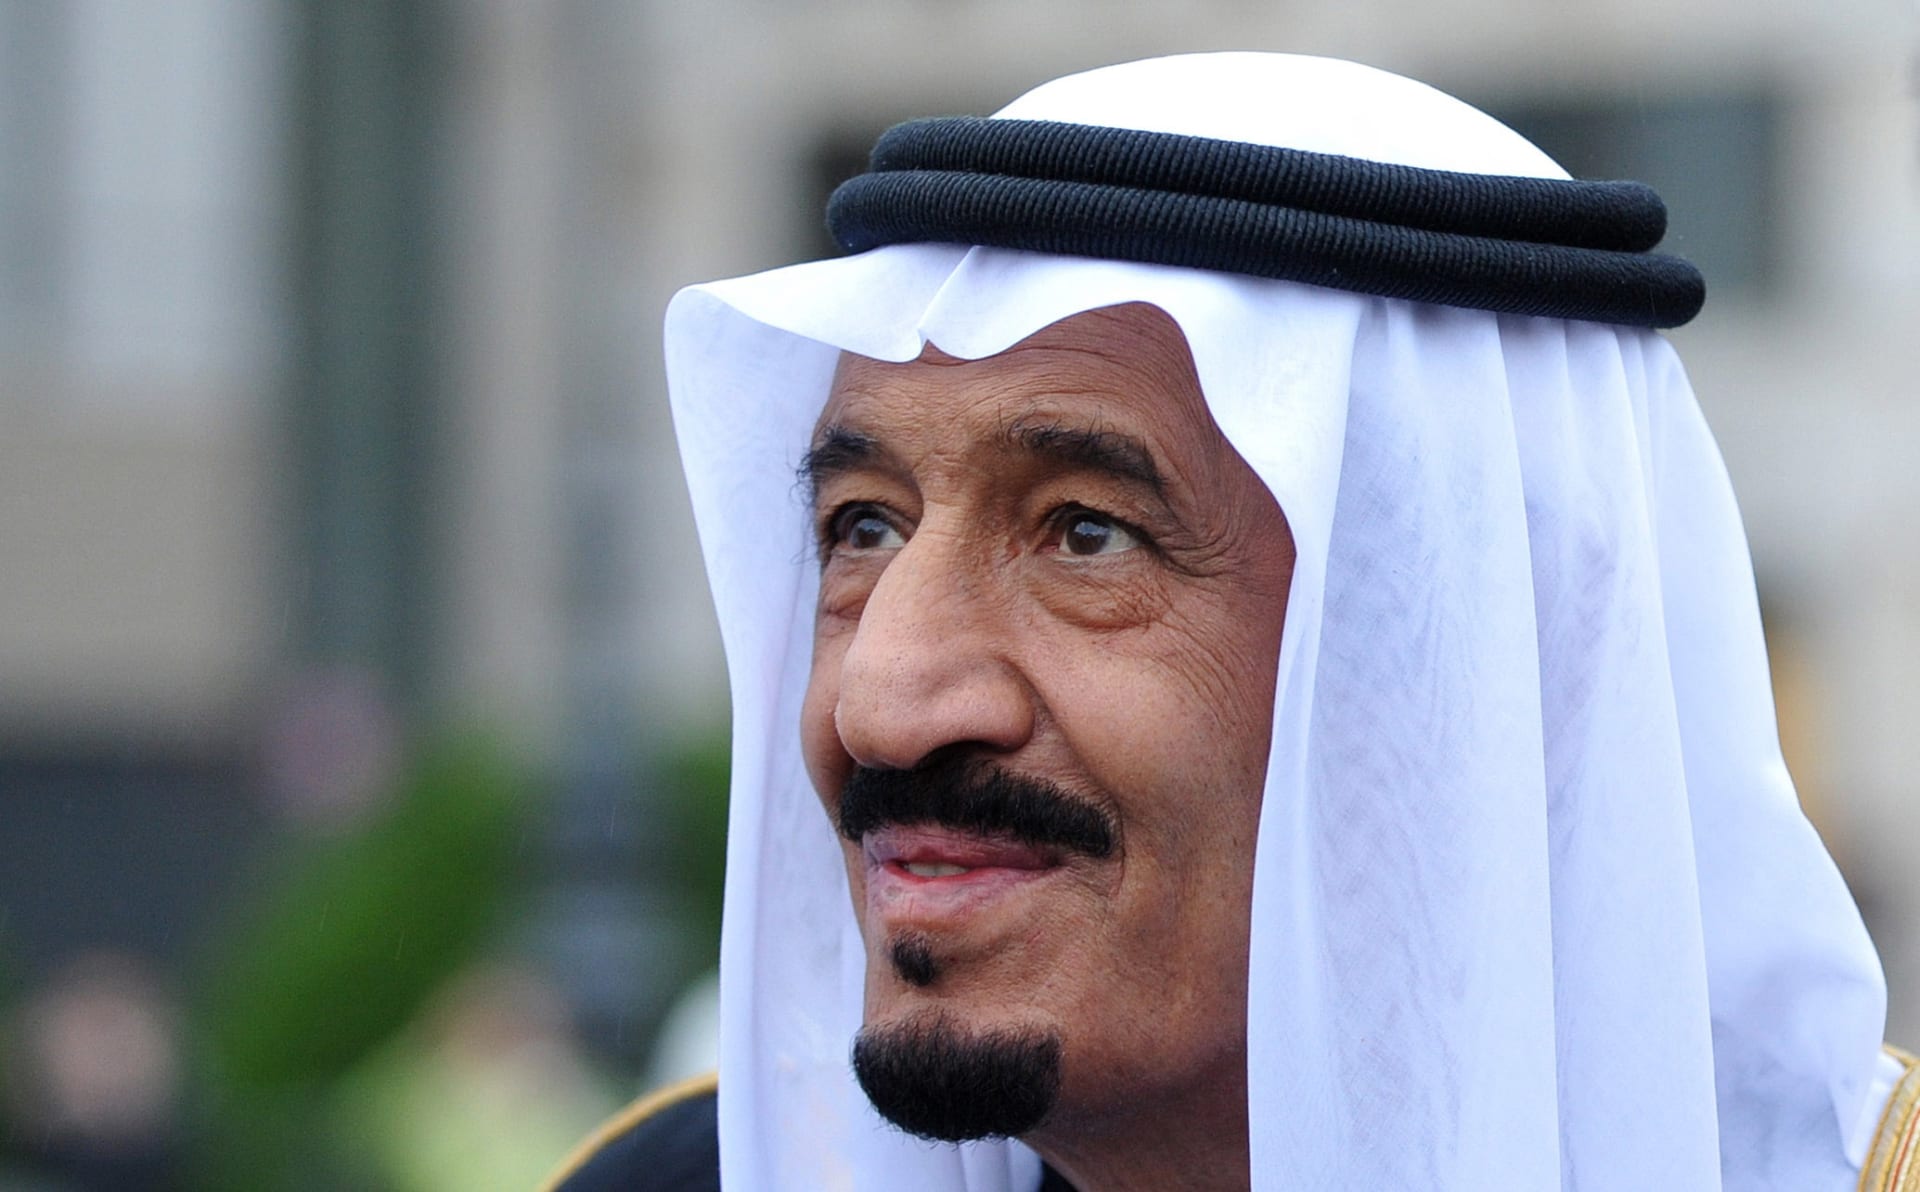 هيئة كبار العلماء السعودية: كل الولاءات السياسية الخارجية خروج عن البيعة الشرعية